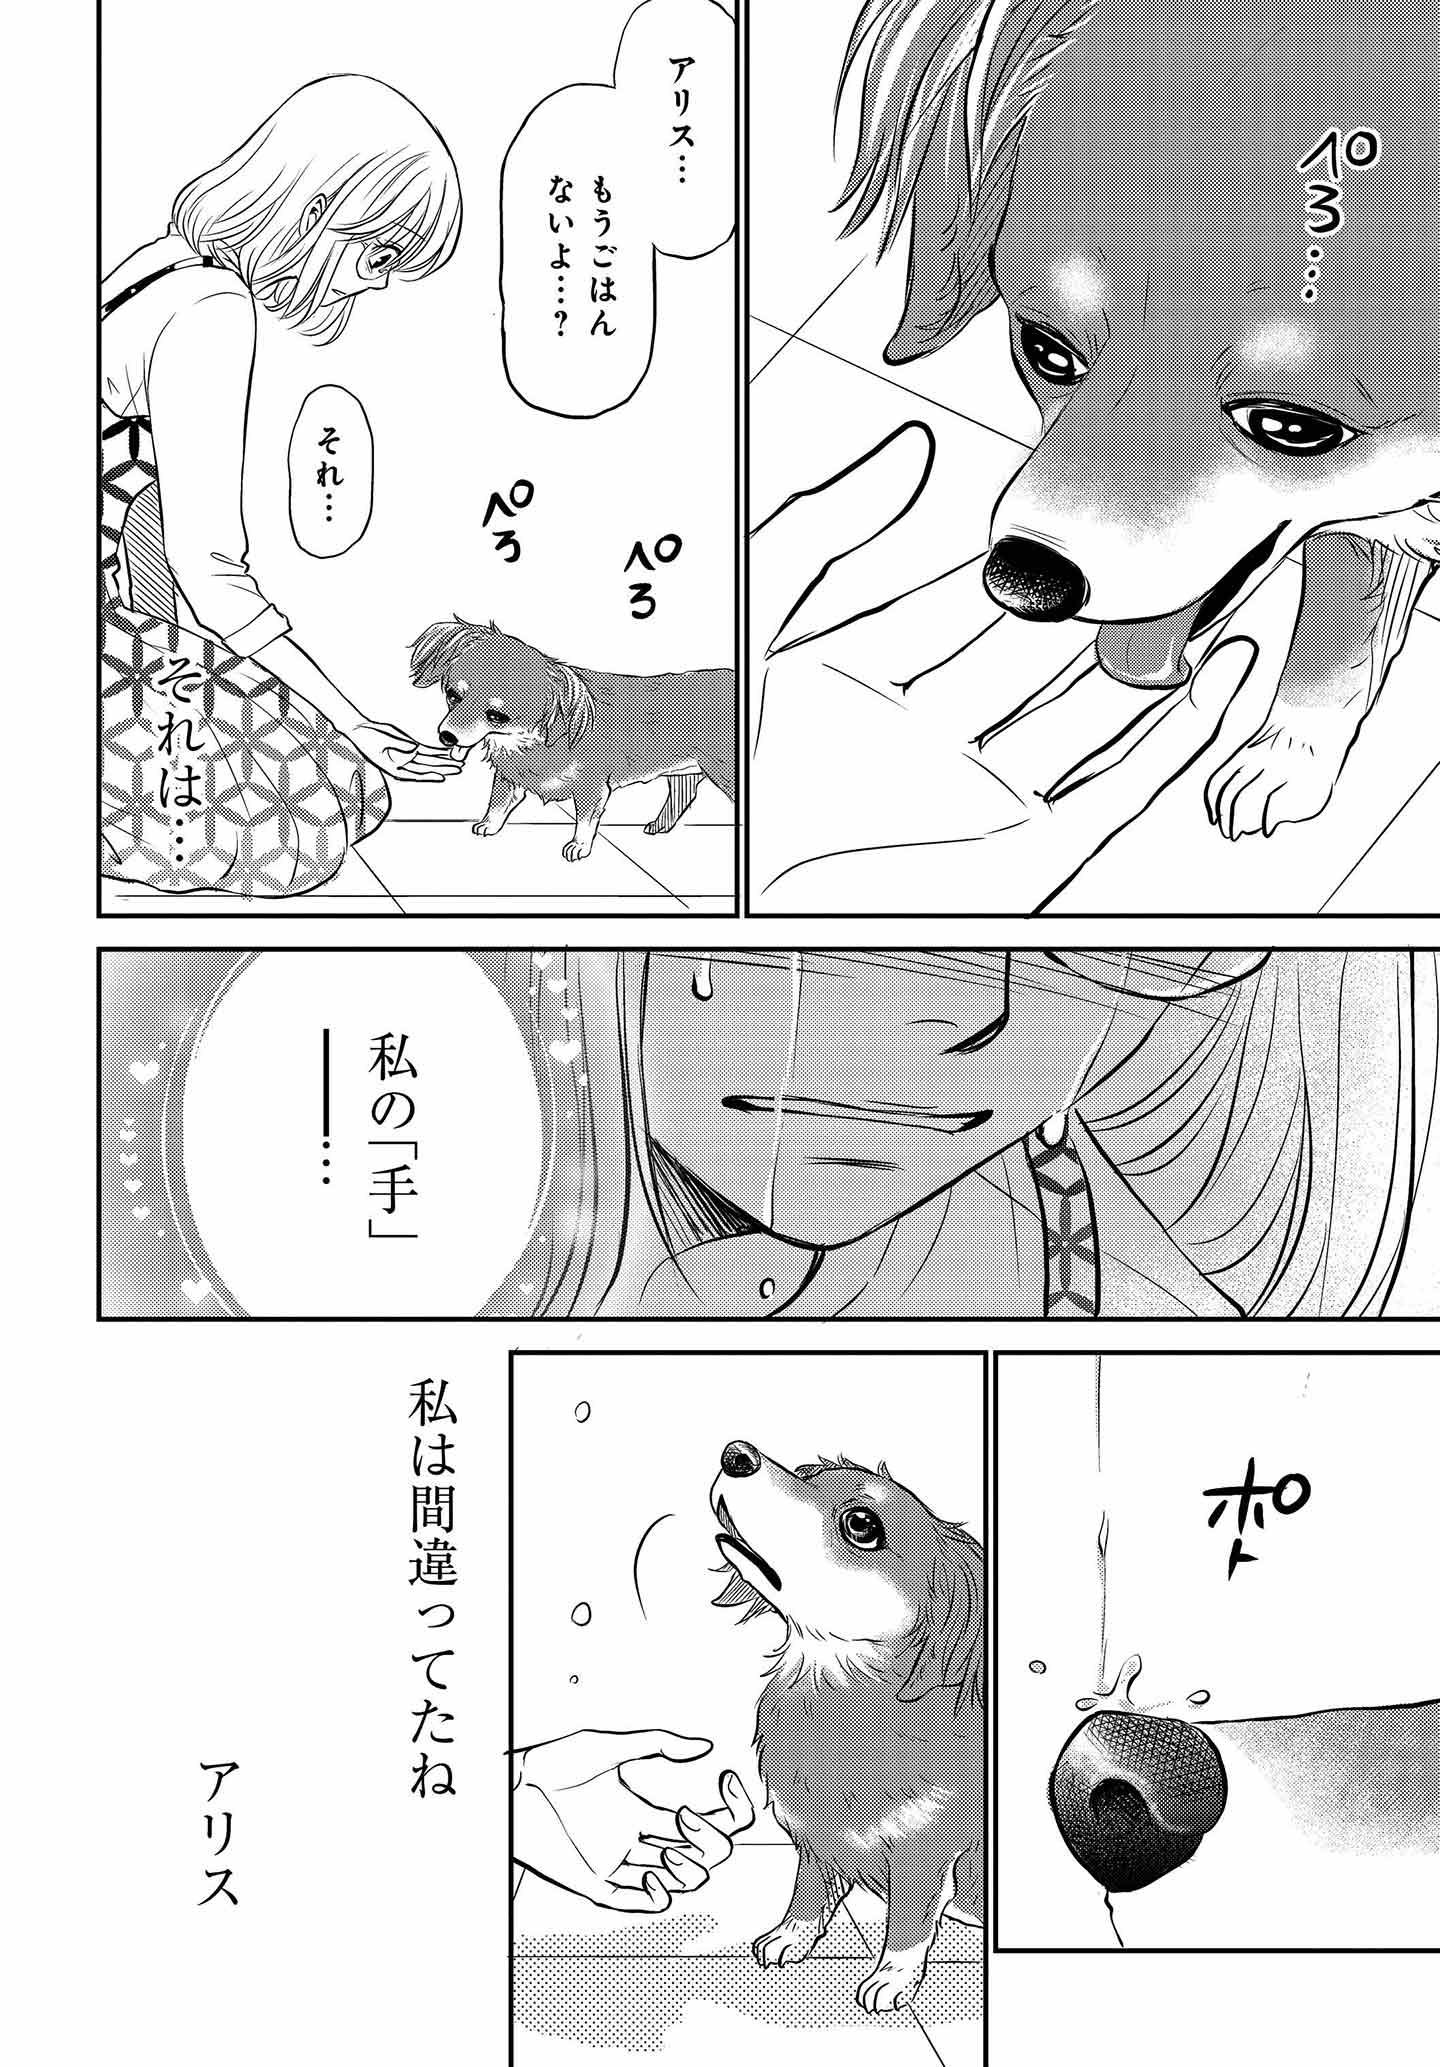 ドッグトレーニング漫画『DOG SIGNAL』30話目　4/4